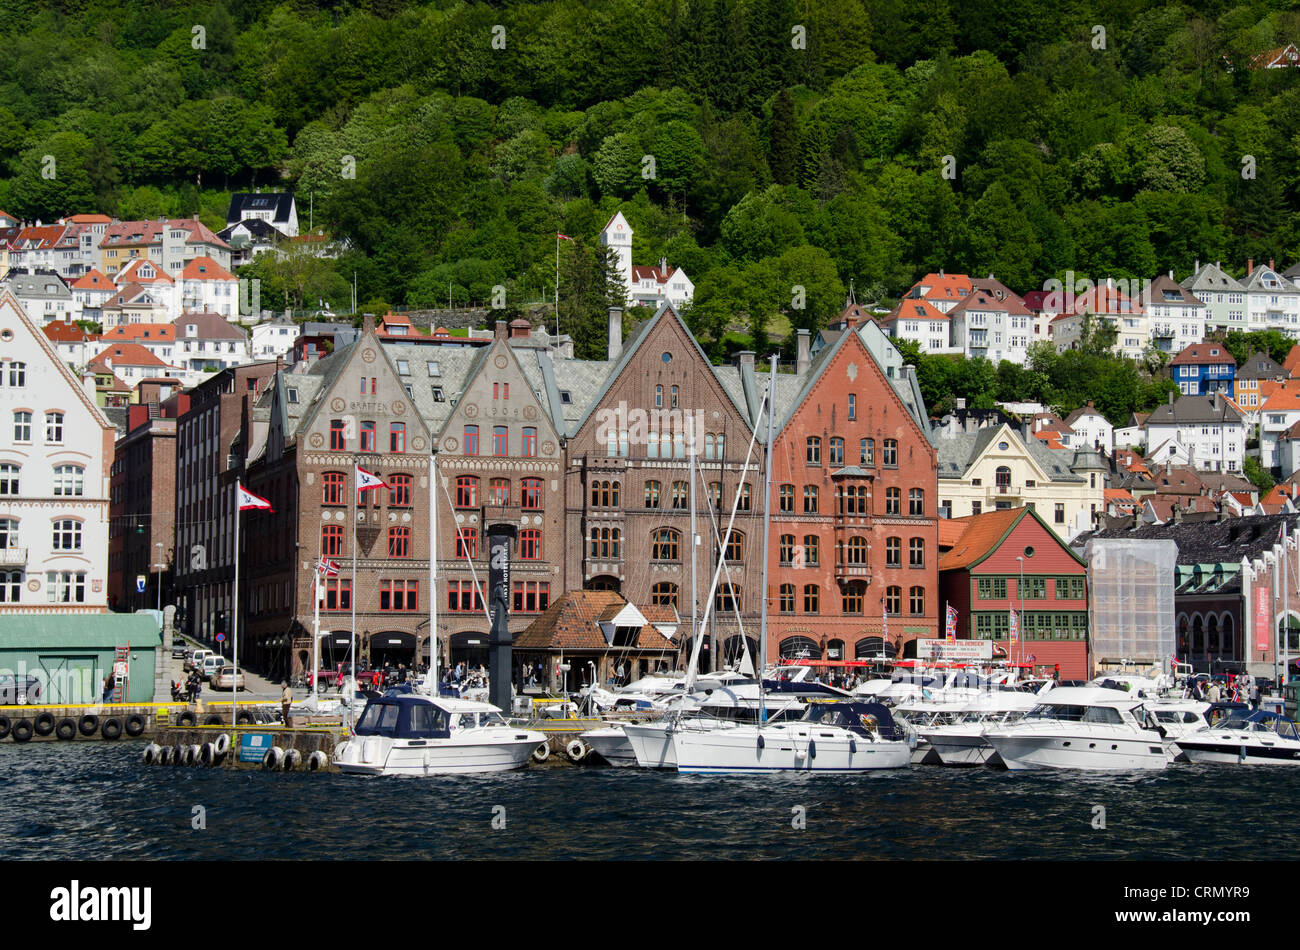 Norway, Bergen. Downtown old Hanseatic historic area of Bryggen, UNESCO World Heritage Site. Wooden buildings along harbor. Stock Photo